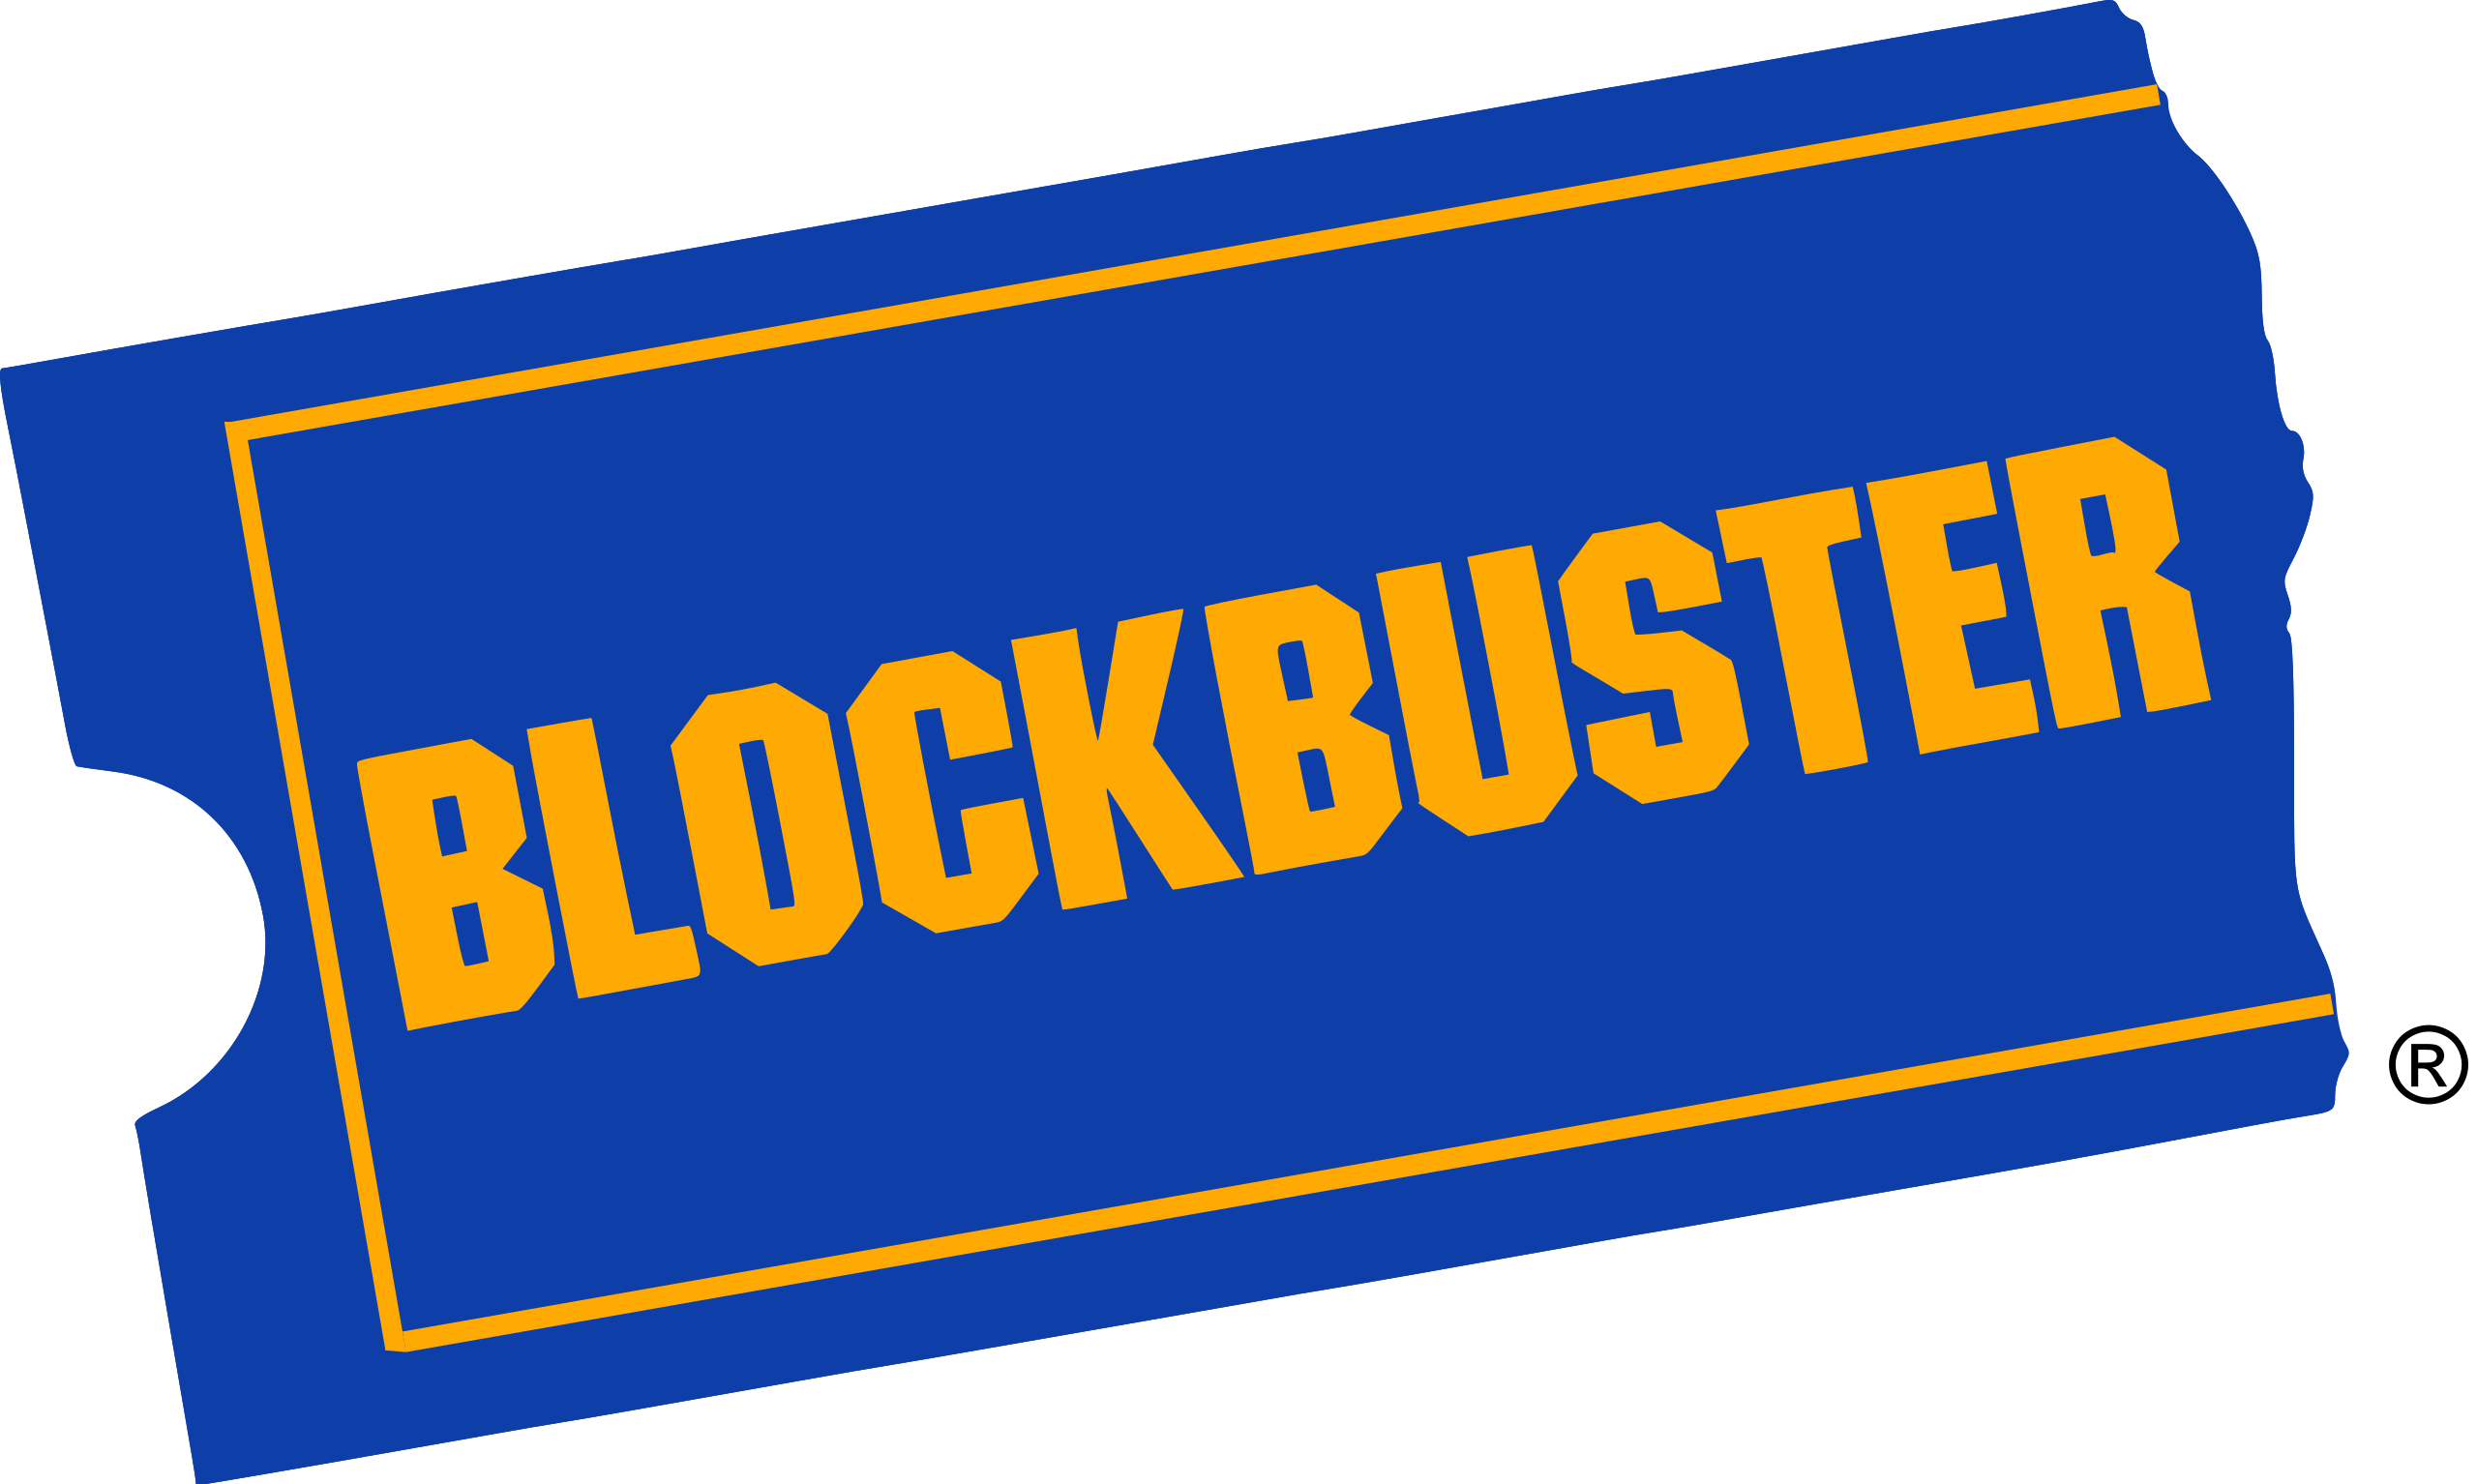 2560px-Blockbuster_logo.svg.png